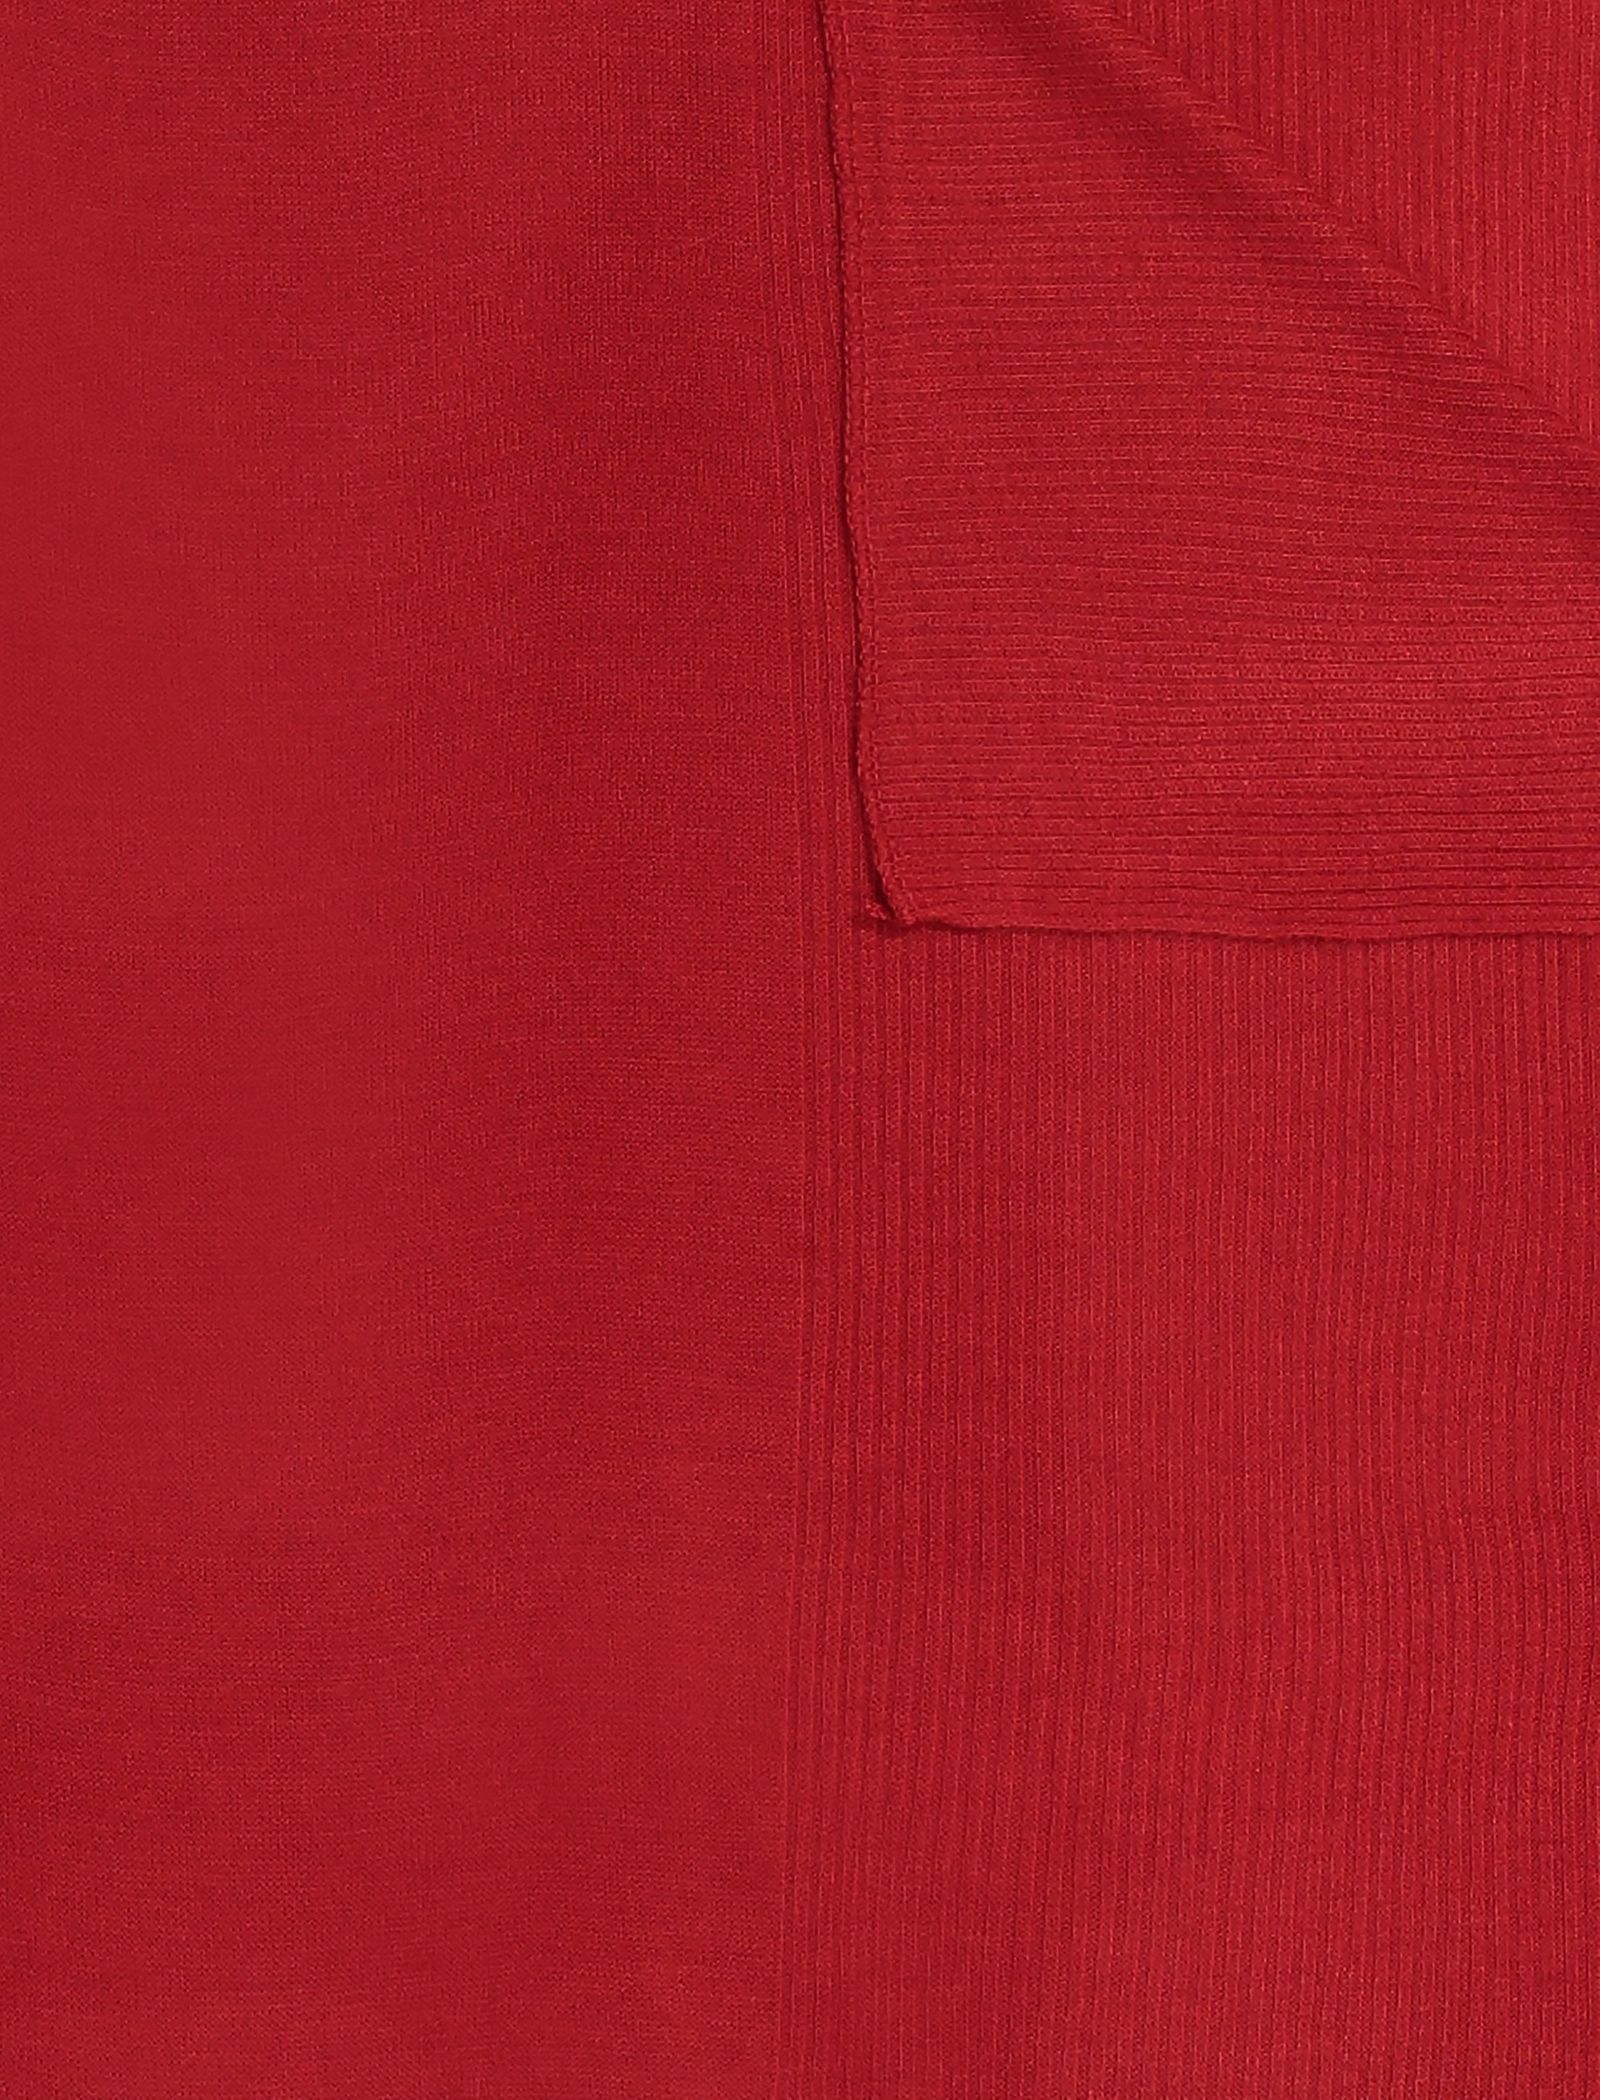 شال ساده زنانه - زیبو تک سایز - قرمز - 3